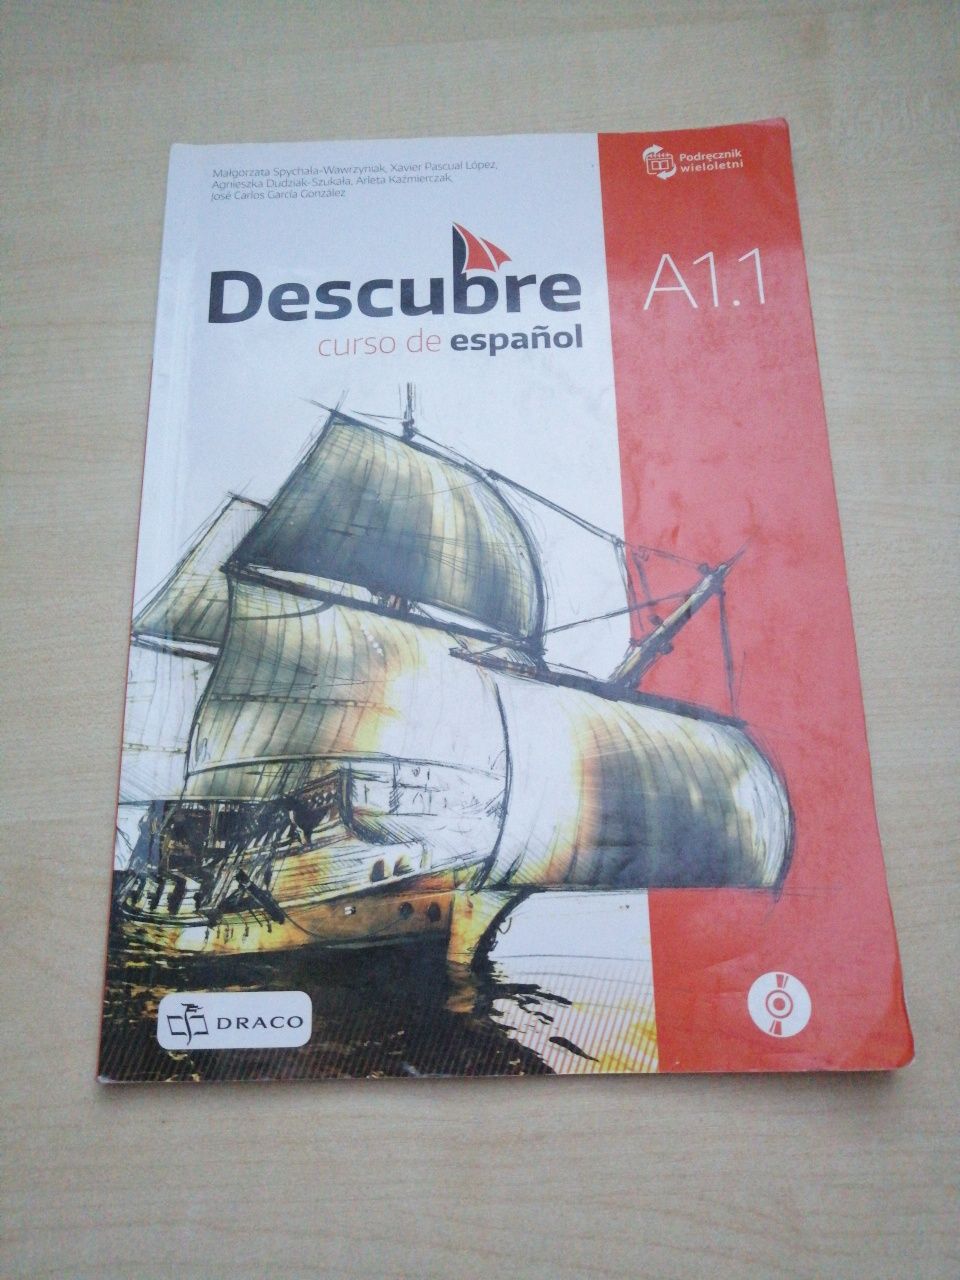 Podręcznik do hiszpańskiego